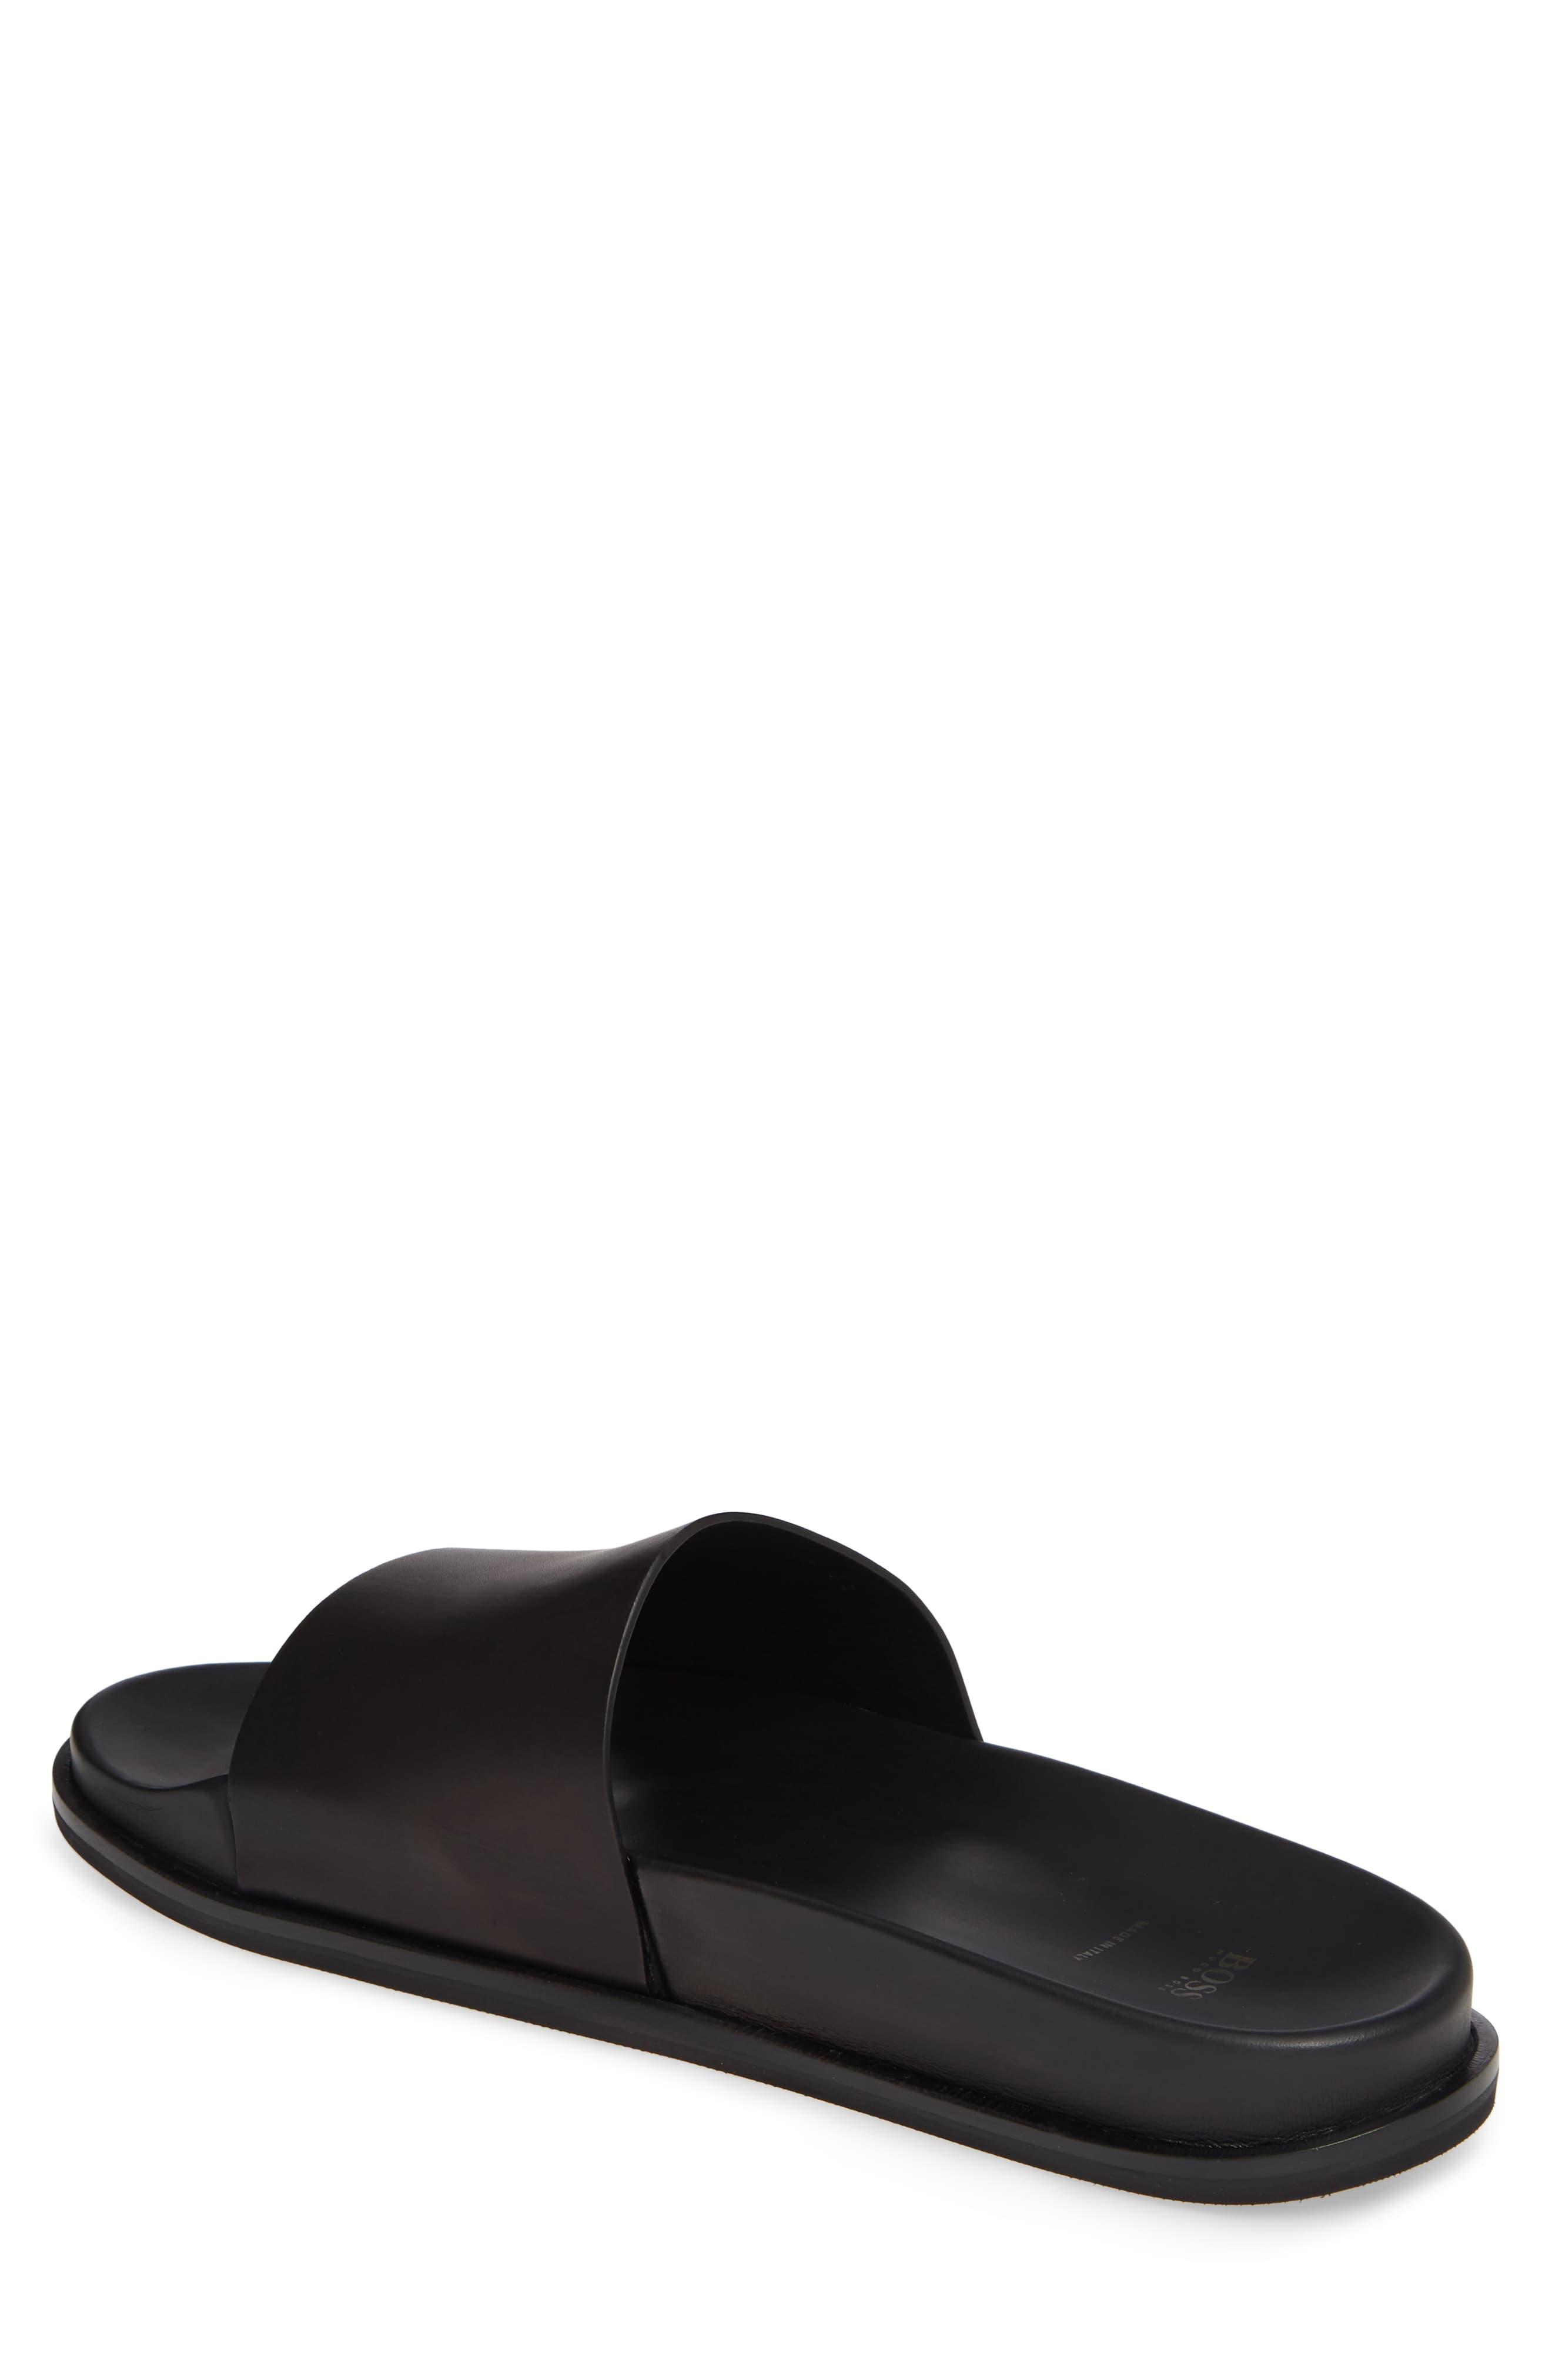 Hugo Boss Cliff Leather Slide Sandal 